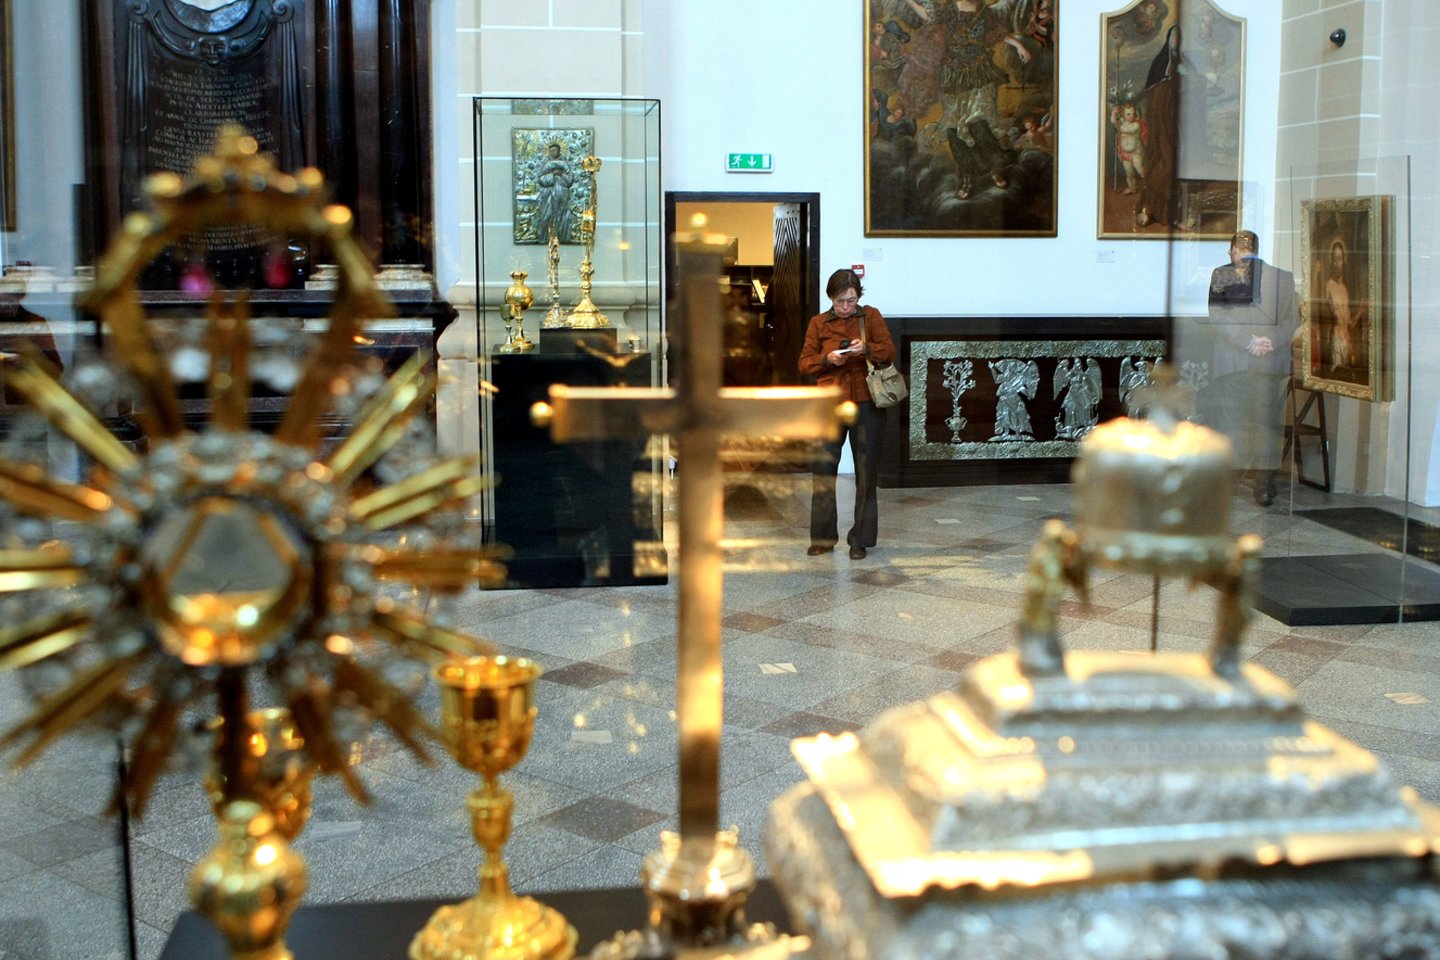 Bažnytinio paveldo muziejui savivaldybė sukrapštė tik 1200 eurų.<br>R.Danisevičiaus nuotr.